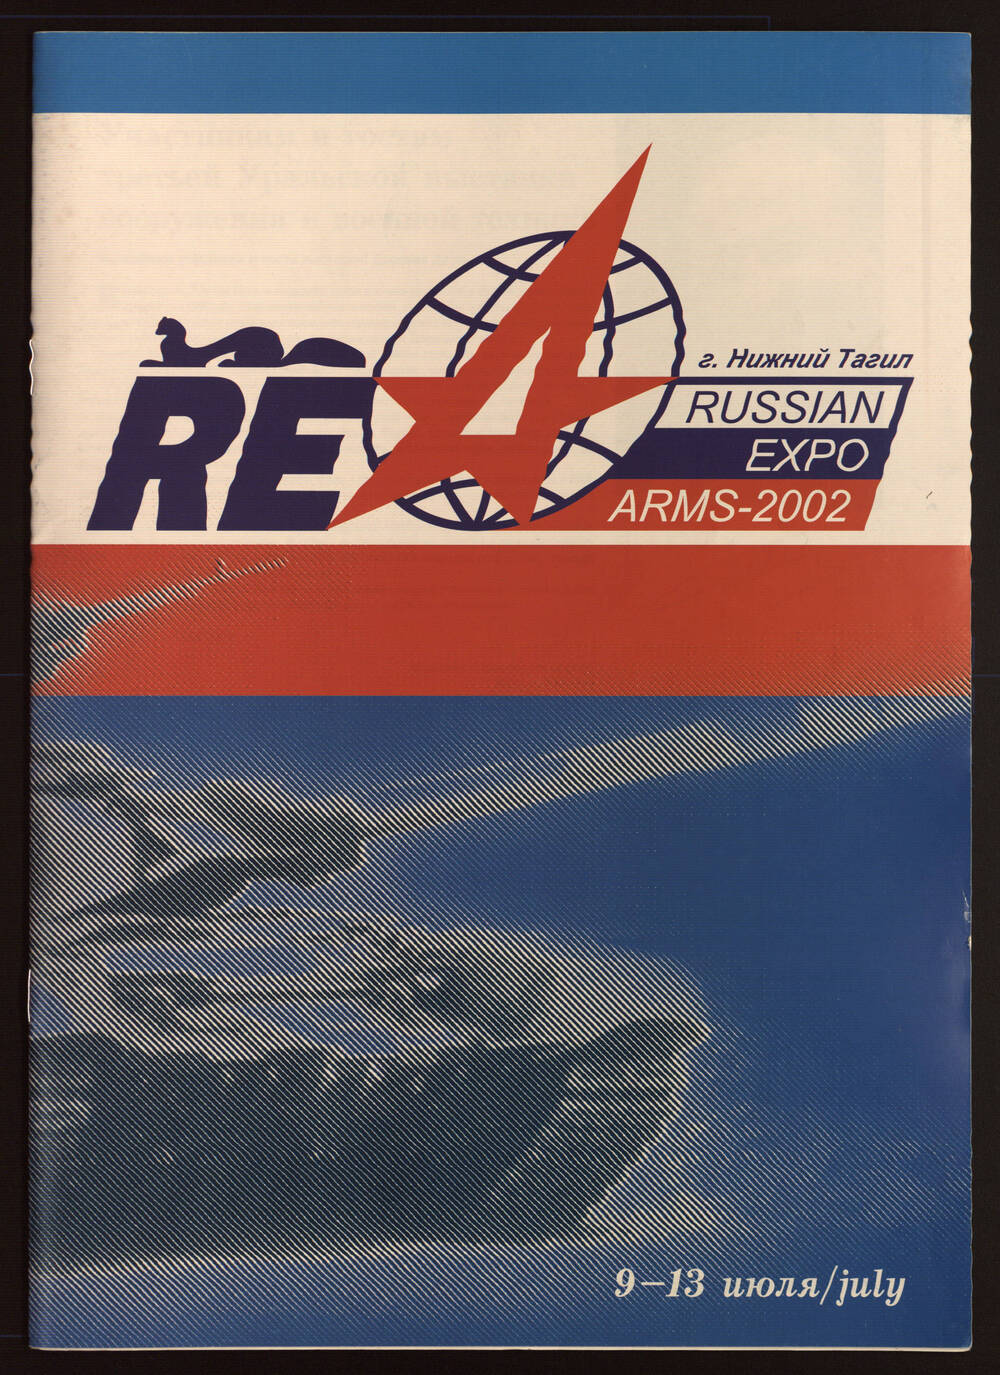 Информационная брошюра по третьей Уральской выставке вооружения и военной техники, проходившей в г. Нижний Тагиле с 9-13 июля 2002 г.